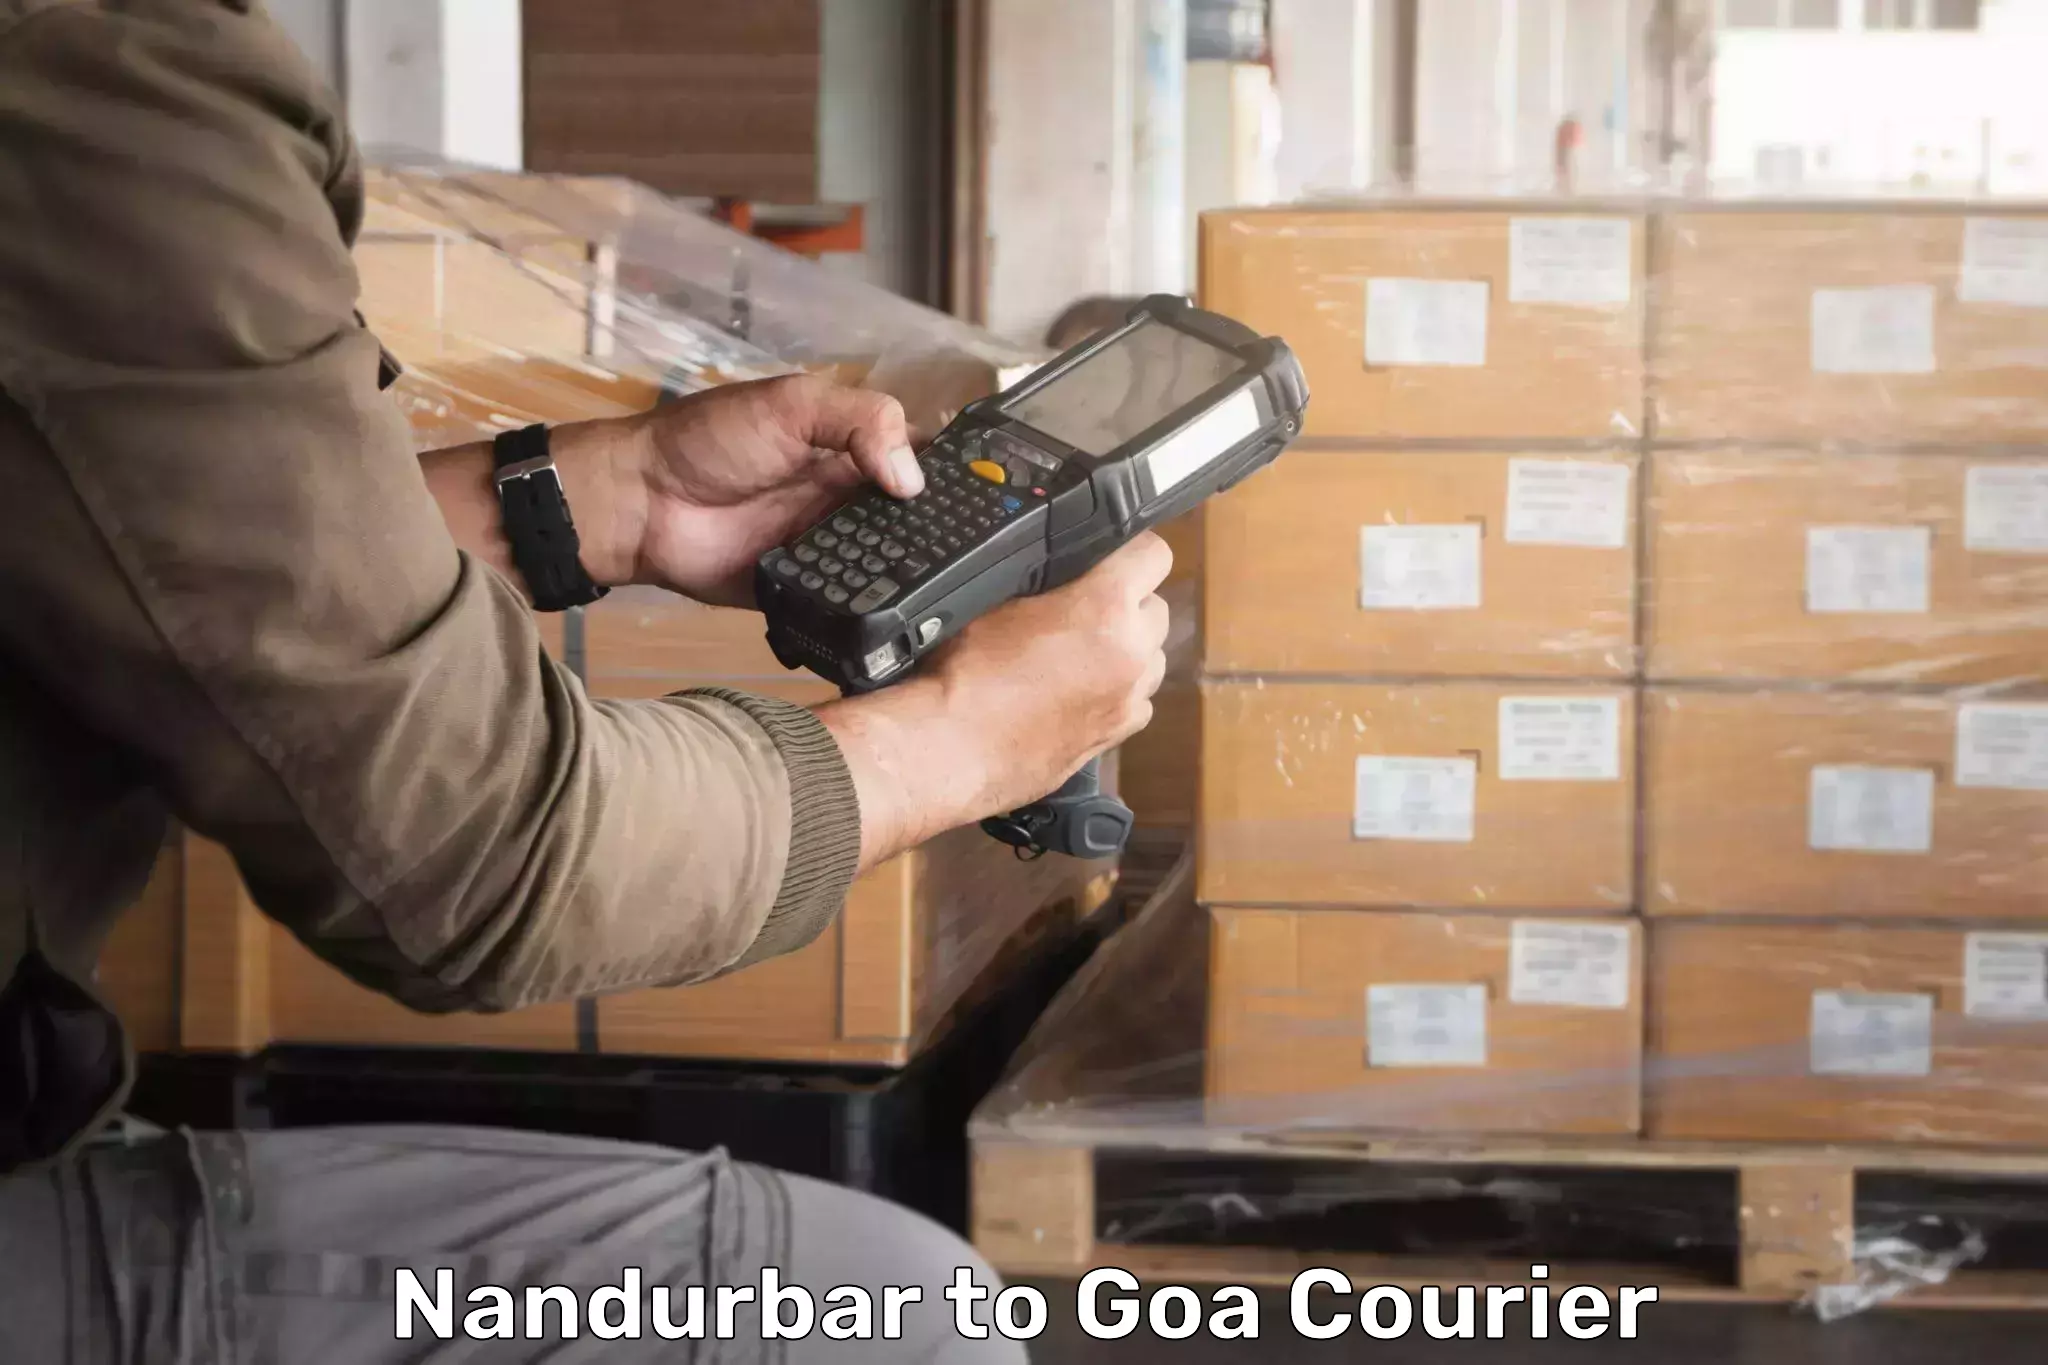 Bulk order courier Nandurbar to Mormugao Port